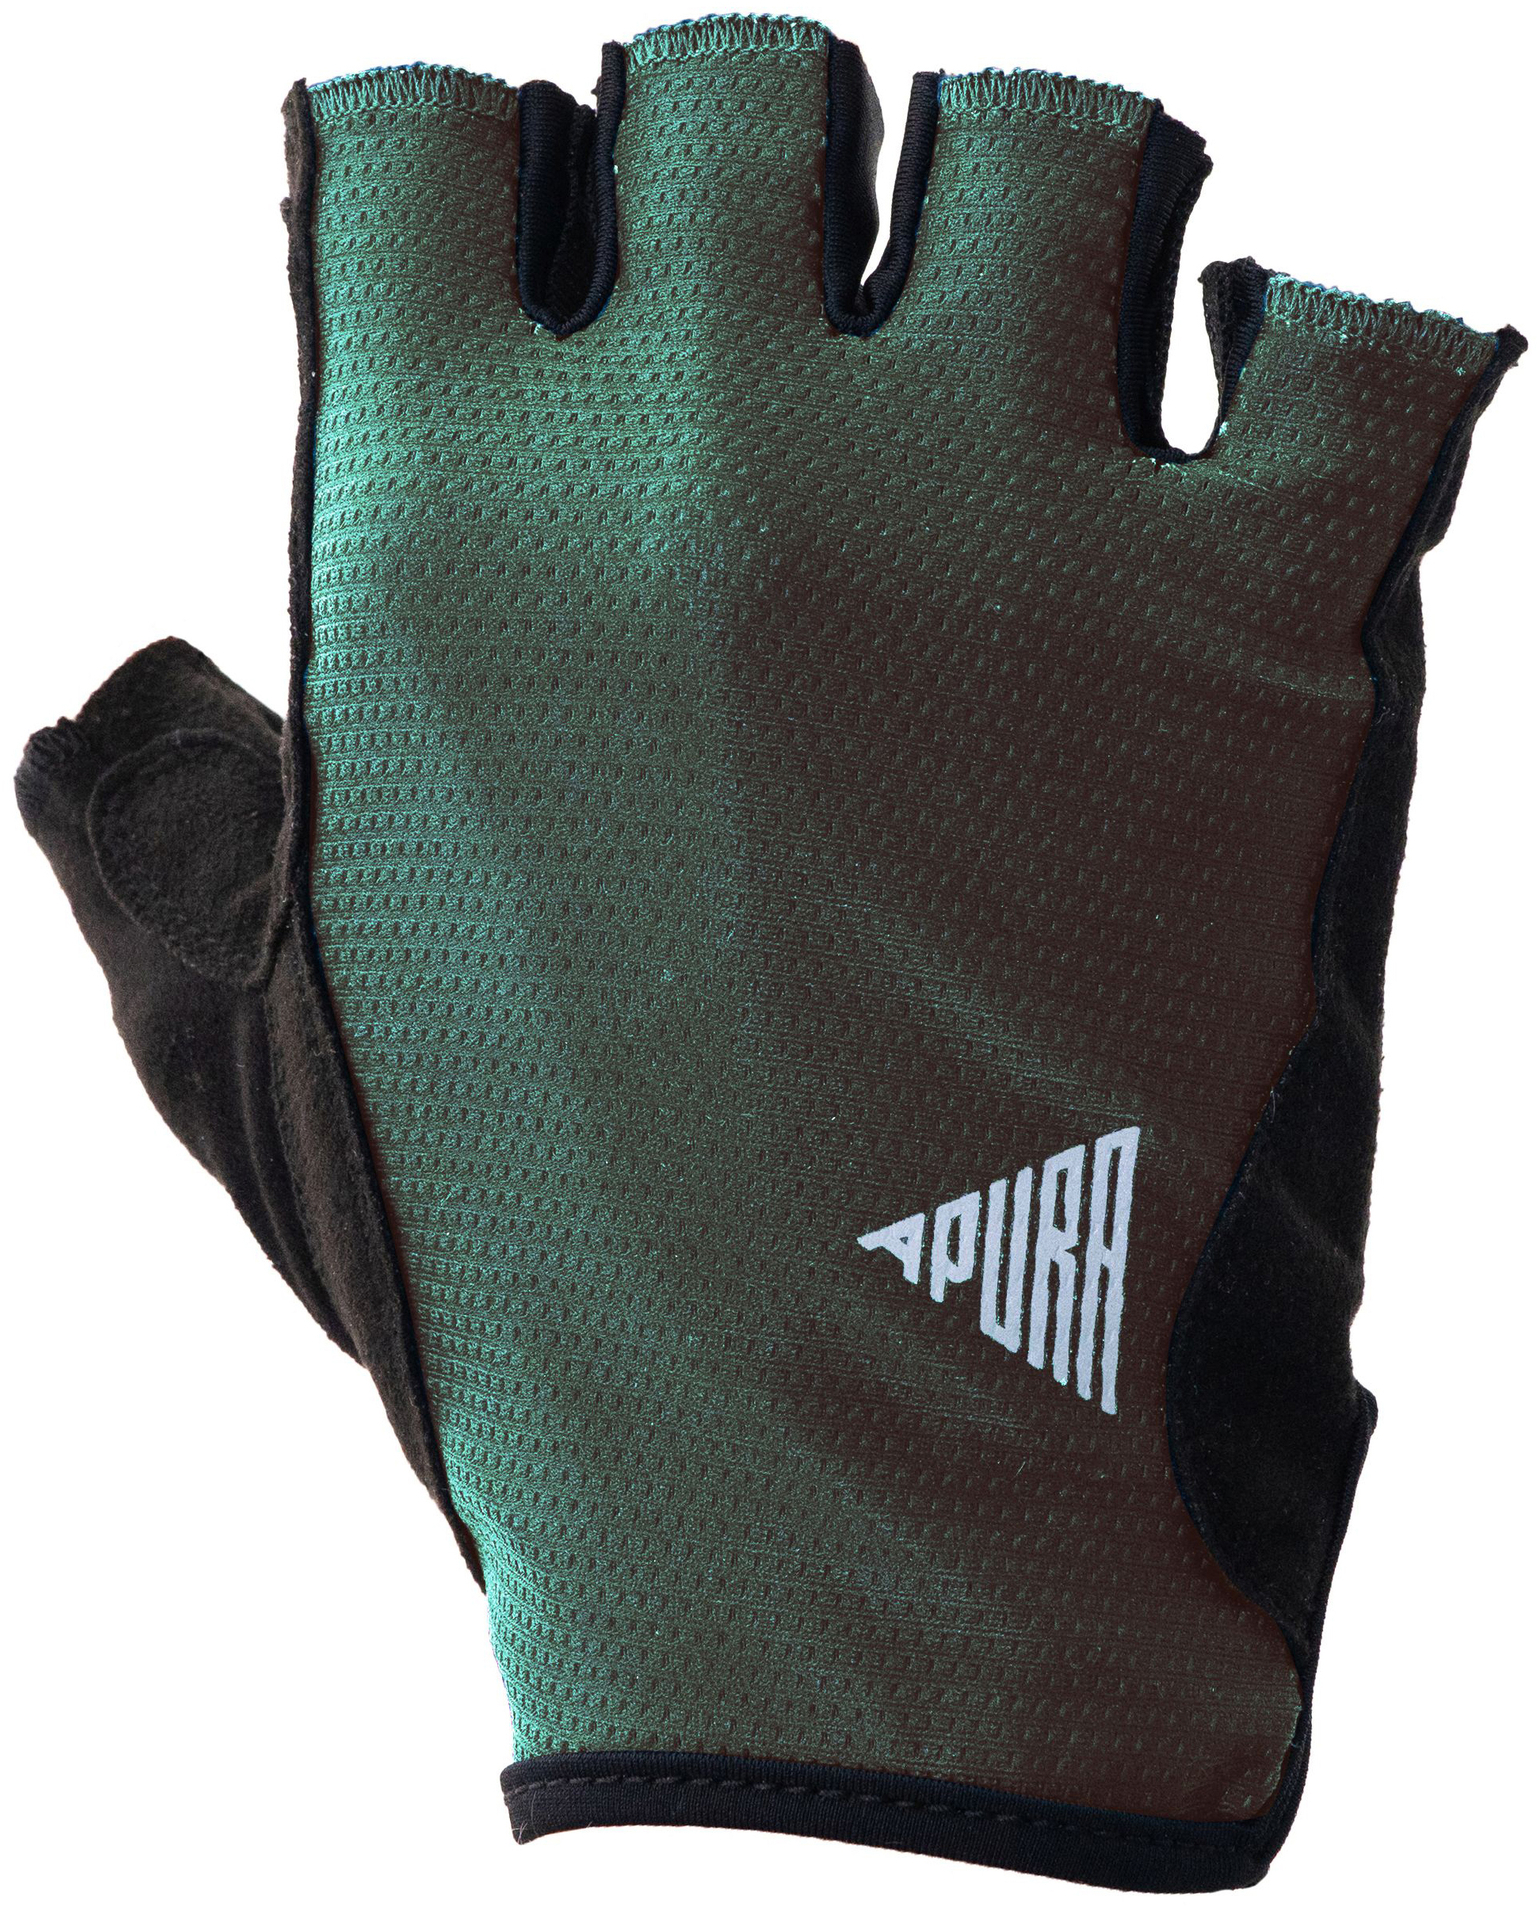 Bekleidung/Handschuhe: Apura  Herren Handschuhe Pure XS 